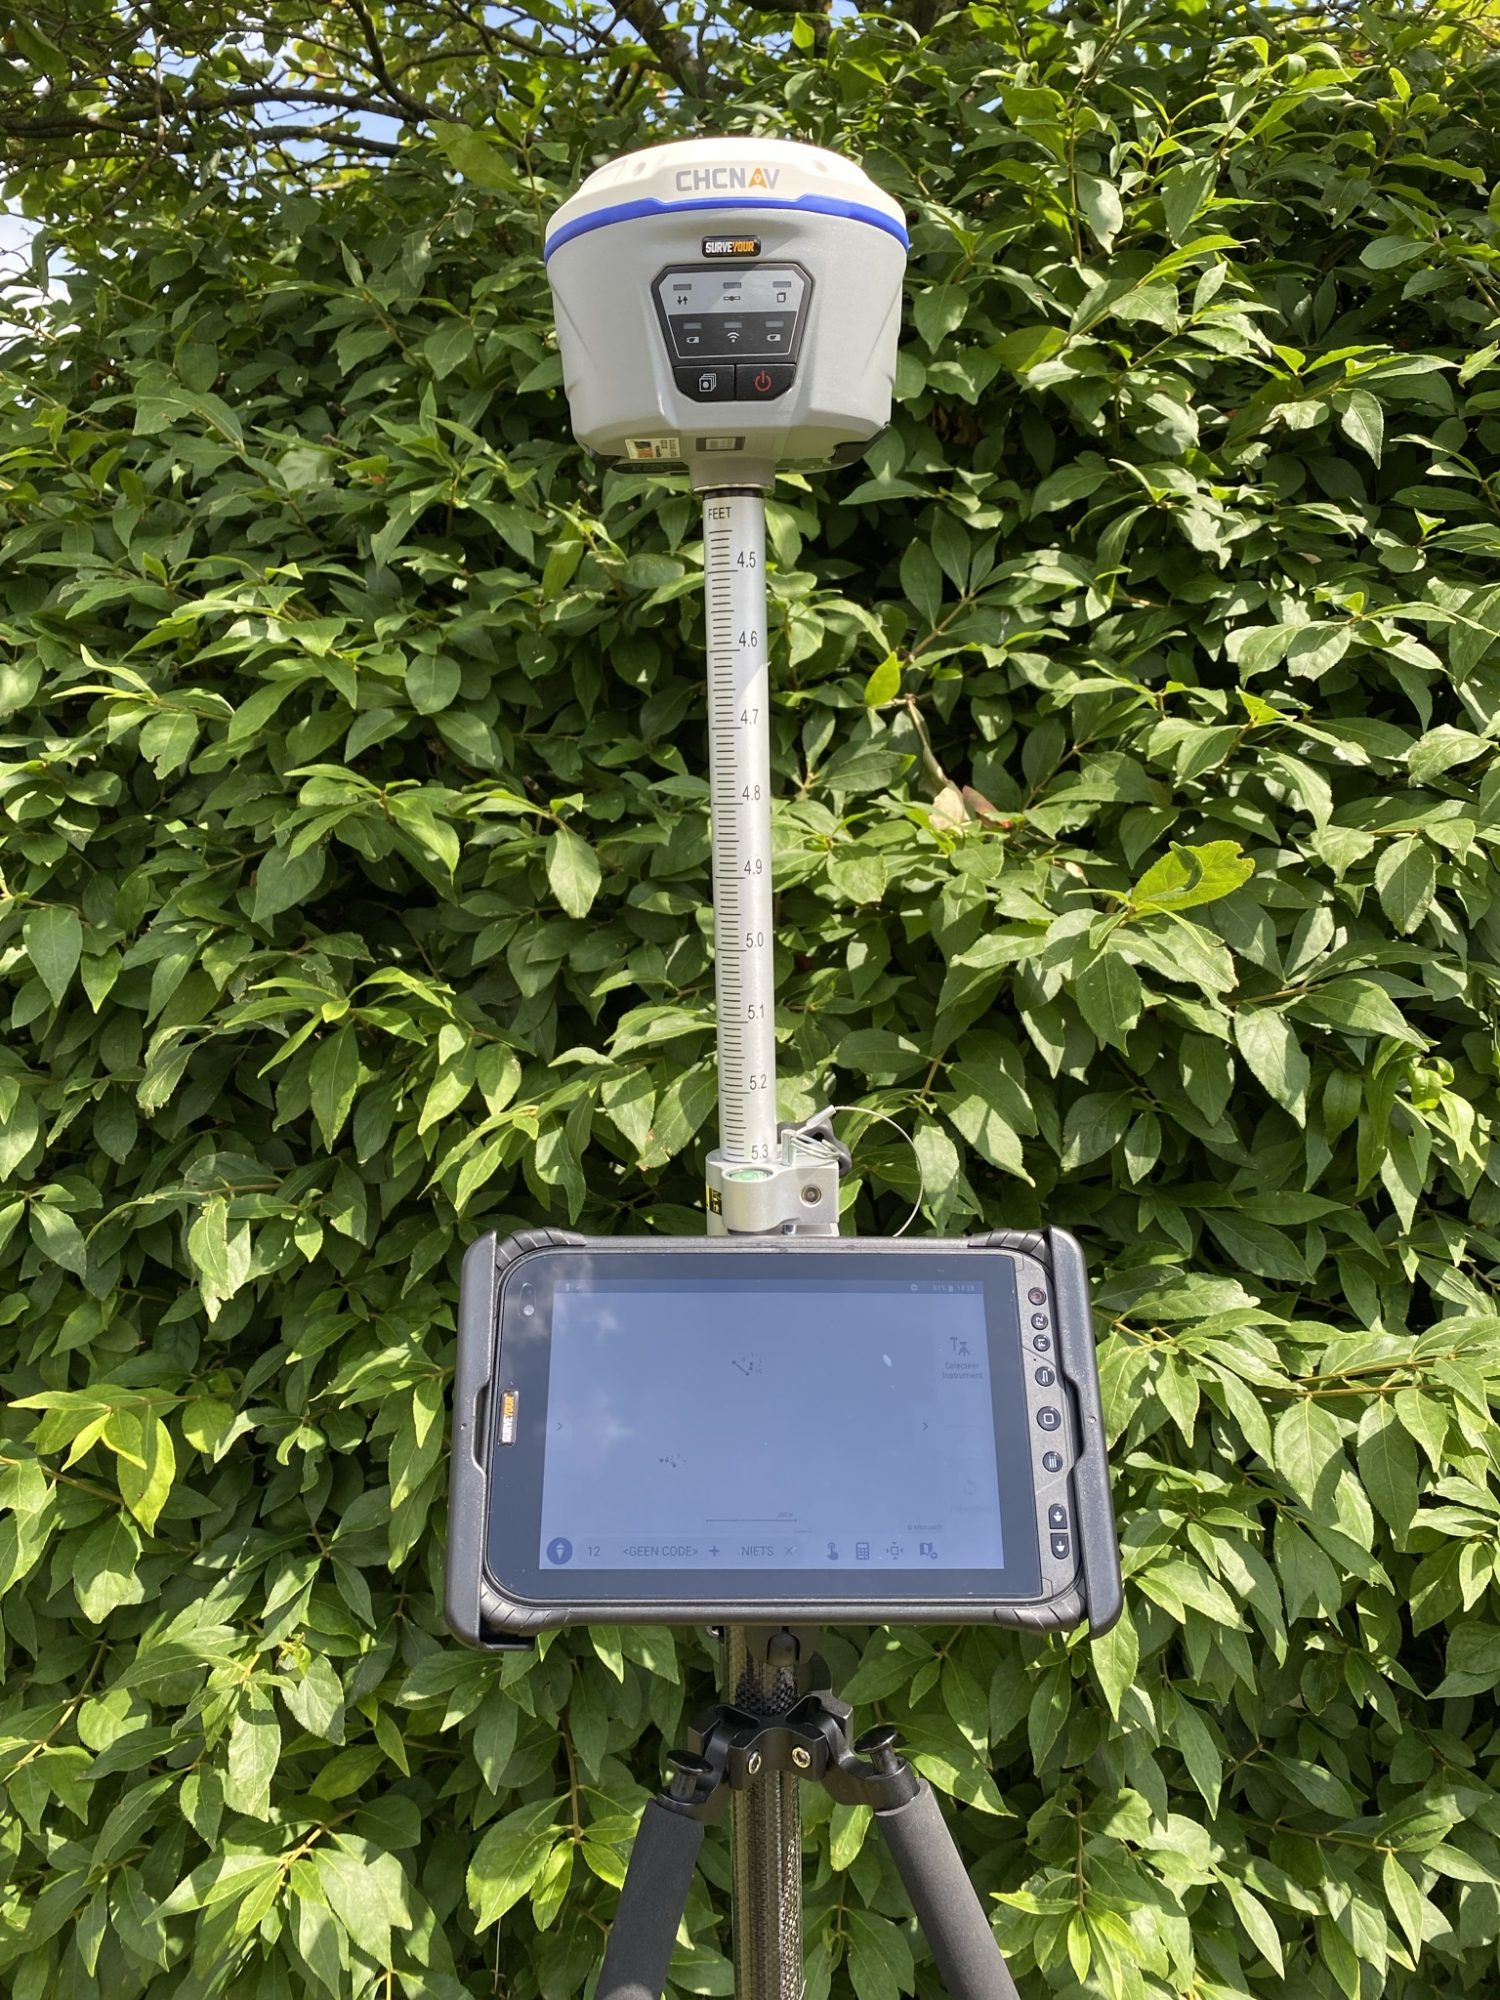 modus Ongepast Zich verzetten tegen Surveyour - PROMO 5 GPS 8 INCH ANDROID TABLET MET CHCNAV i50